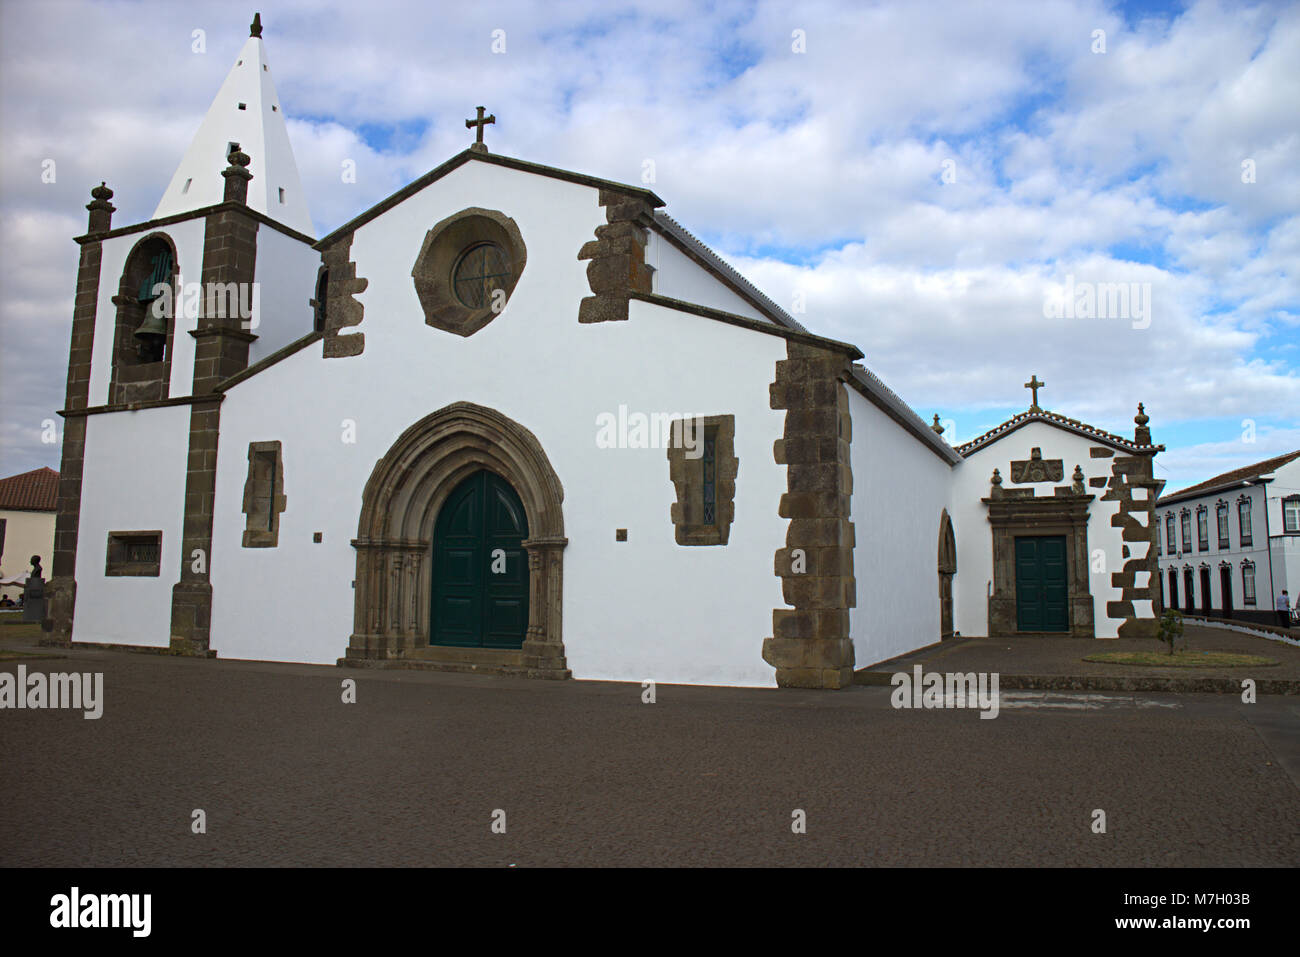 São Mateus, Catholic Mother Church of São Sebastiãno (St Sebastian), Terceira island, Azores, Portugal Stock Photo